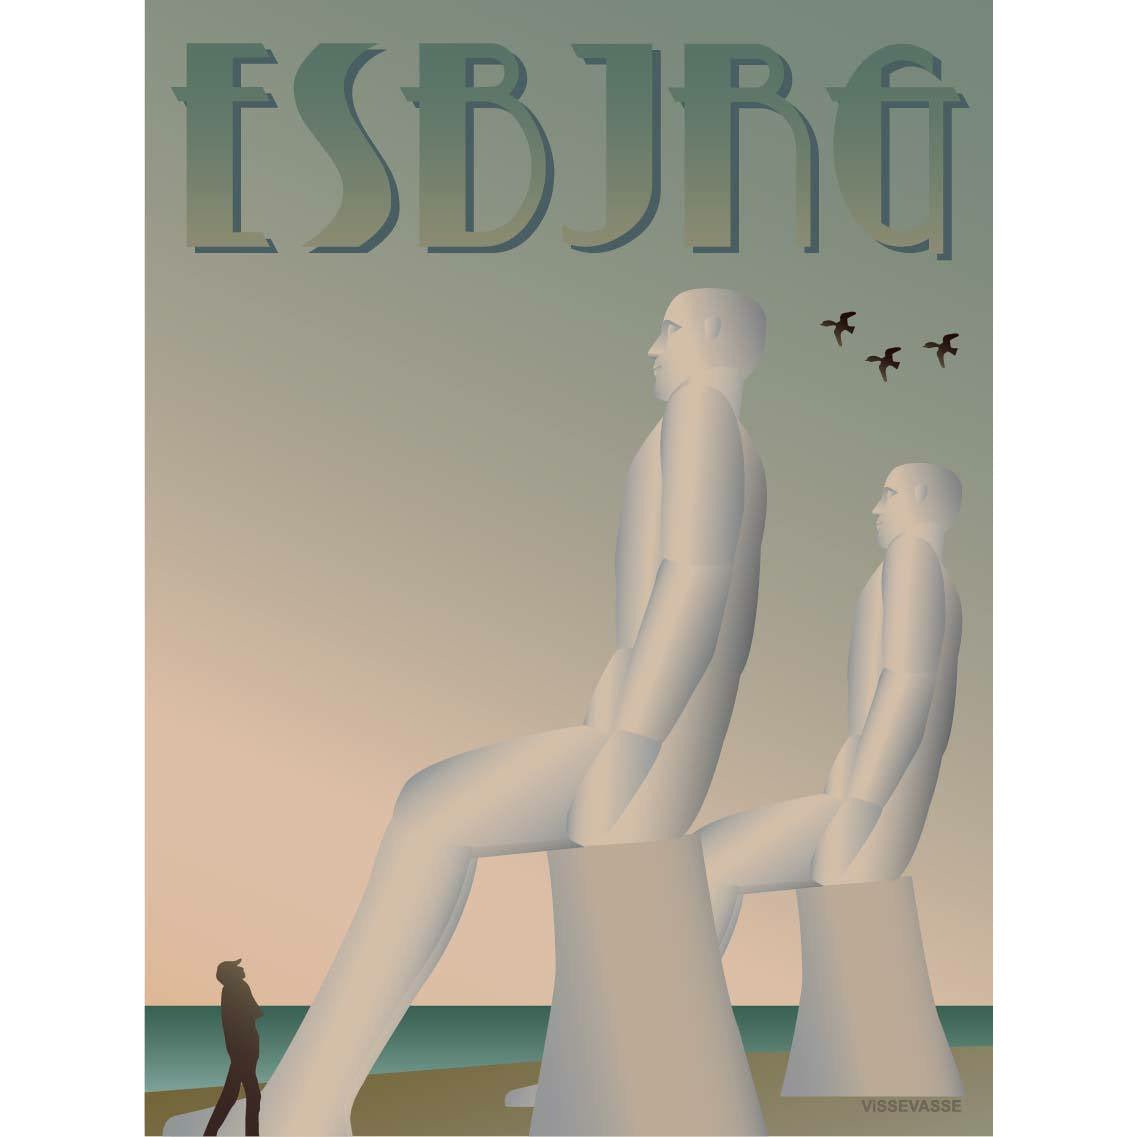 Vissevasse Esbjerg White Men Poster, 30 X40 Cm